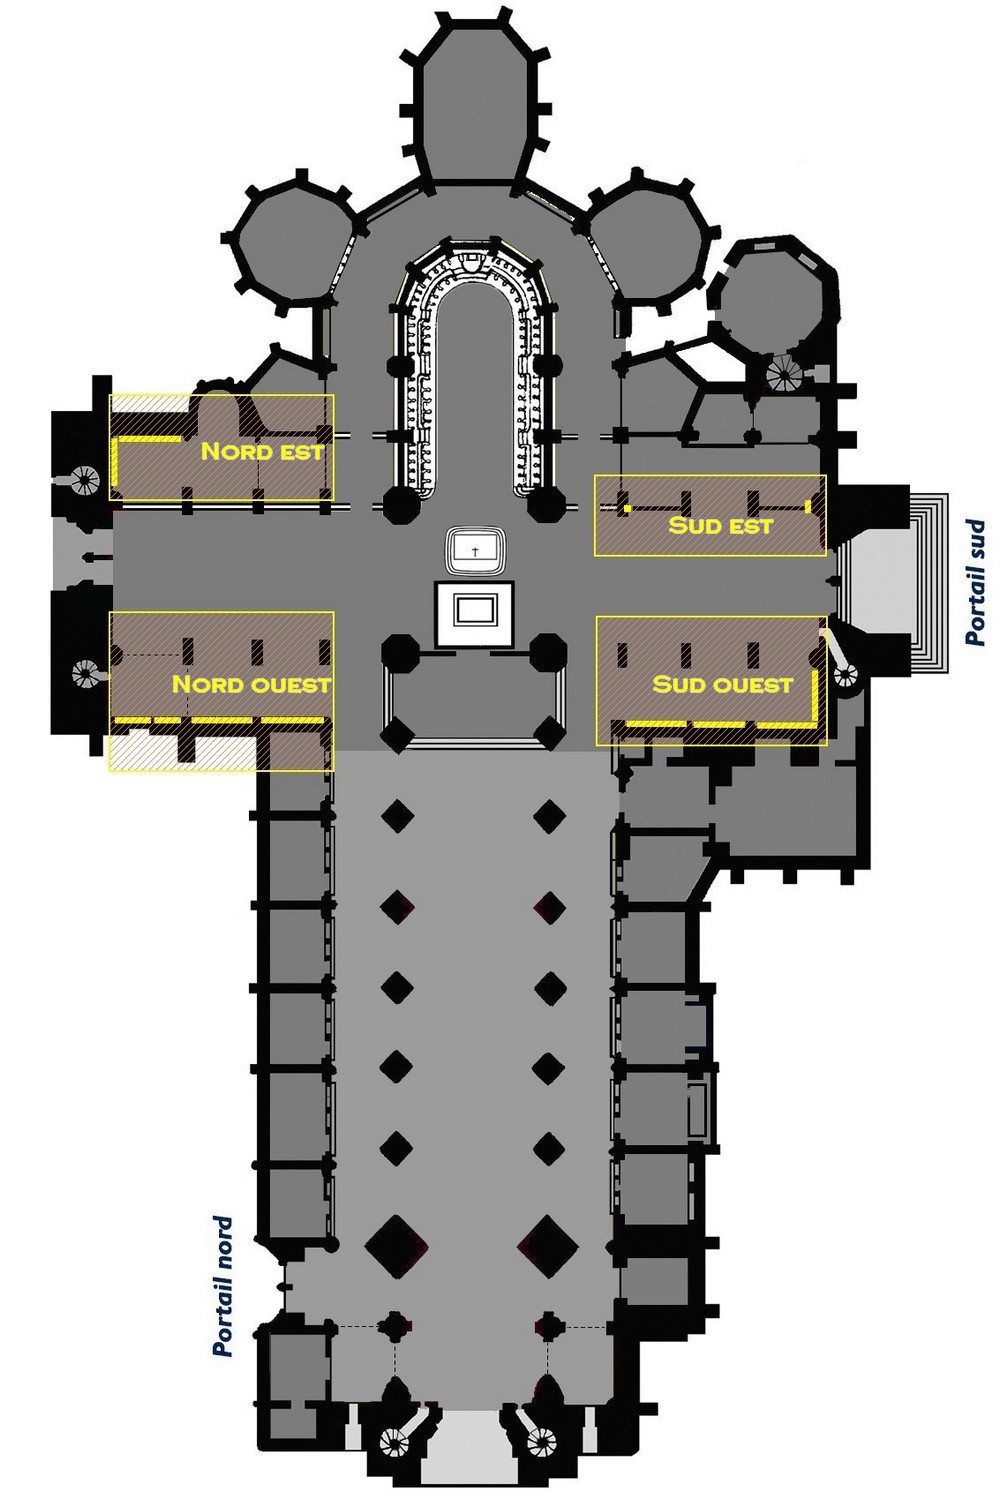 Transept décomposé cardinalement